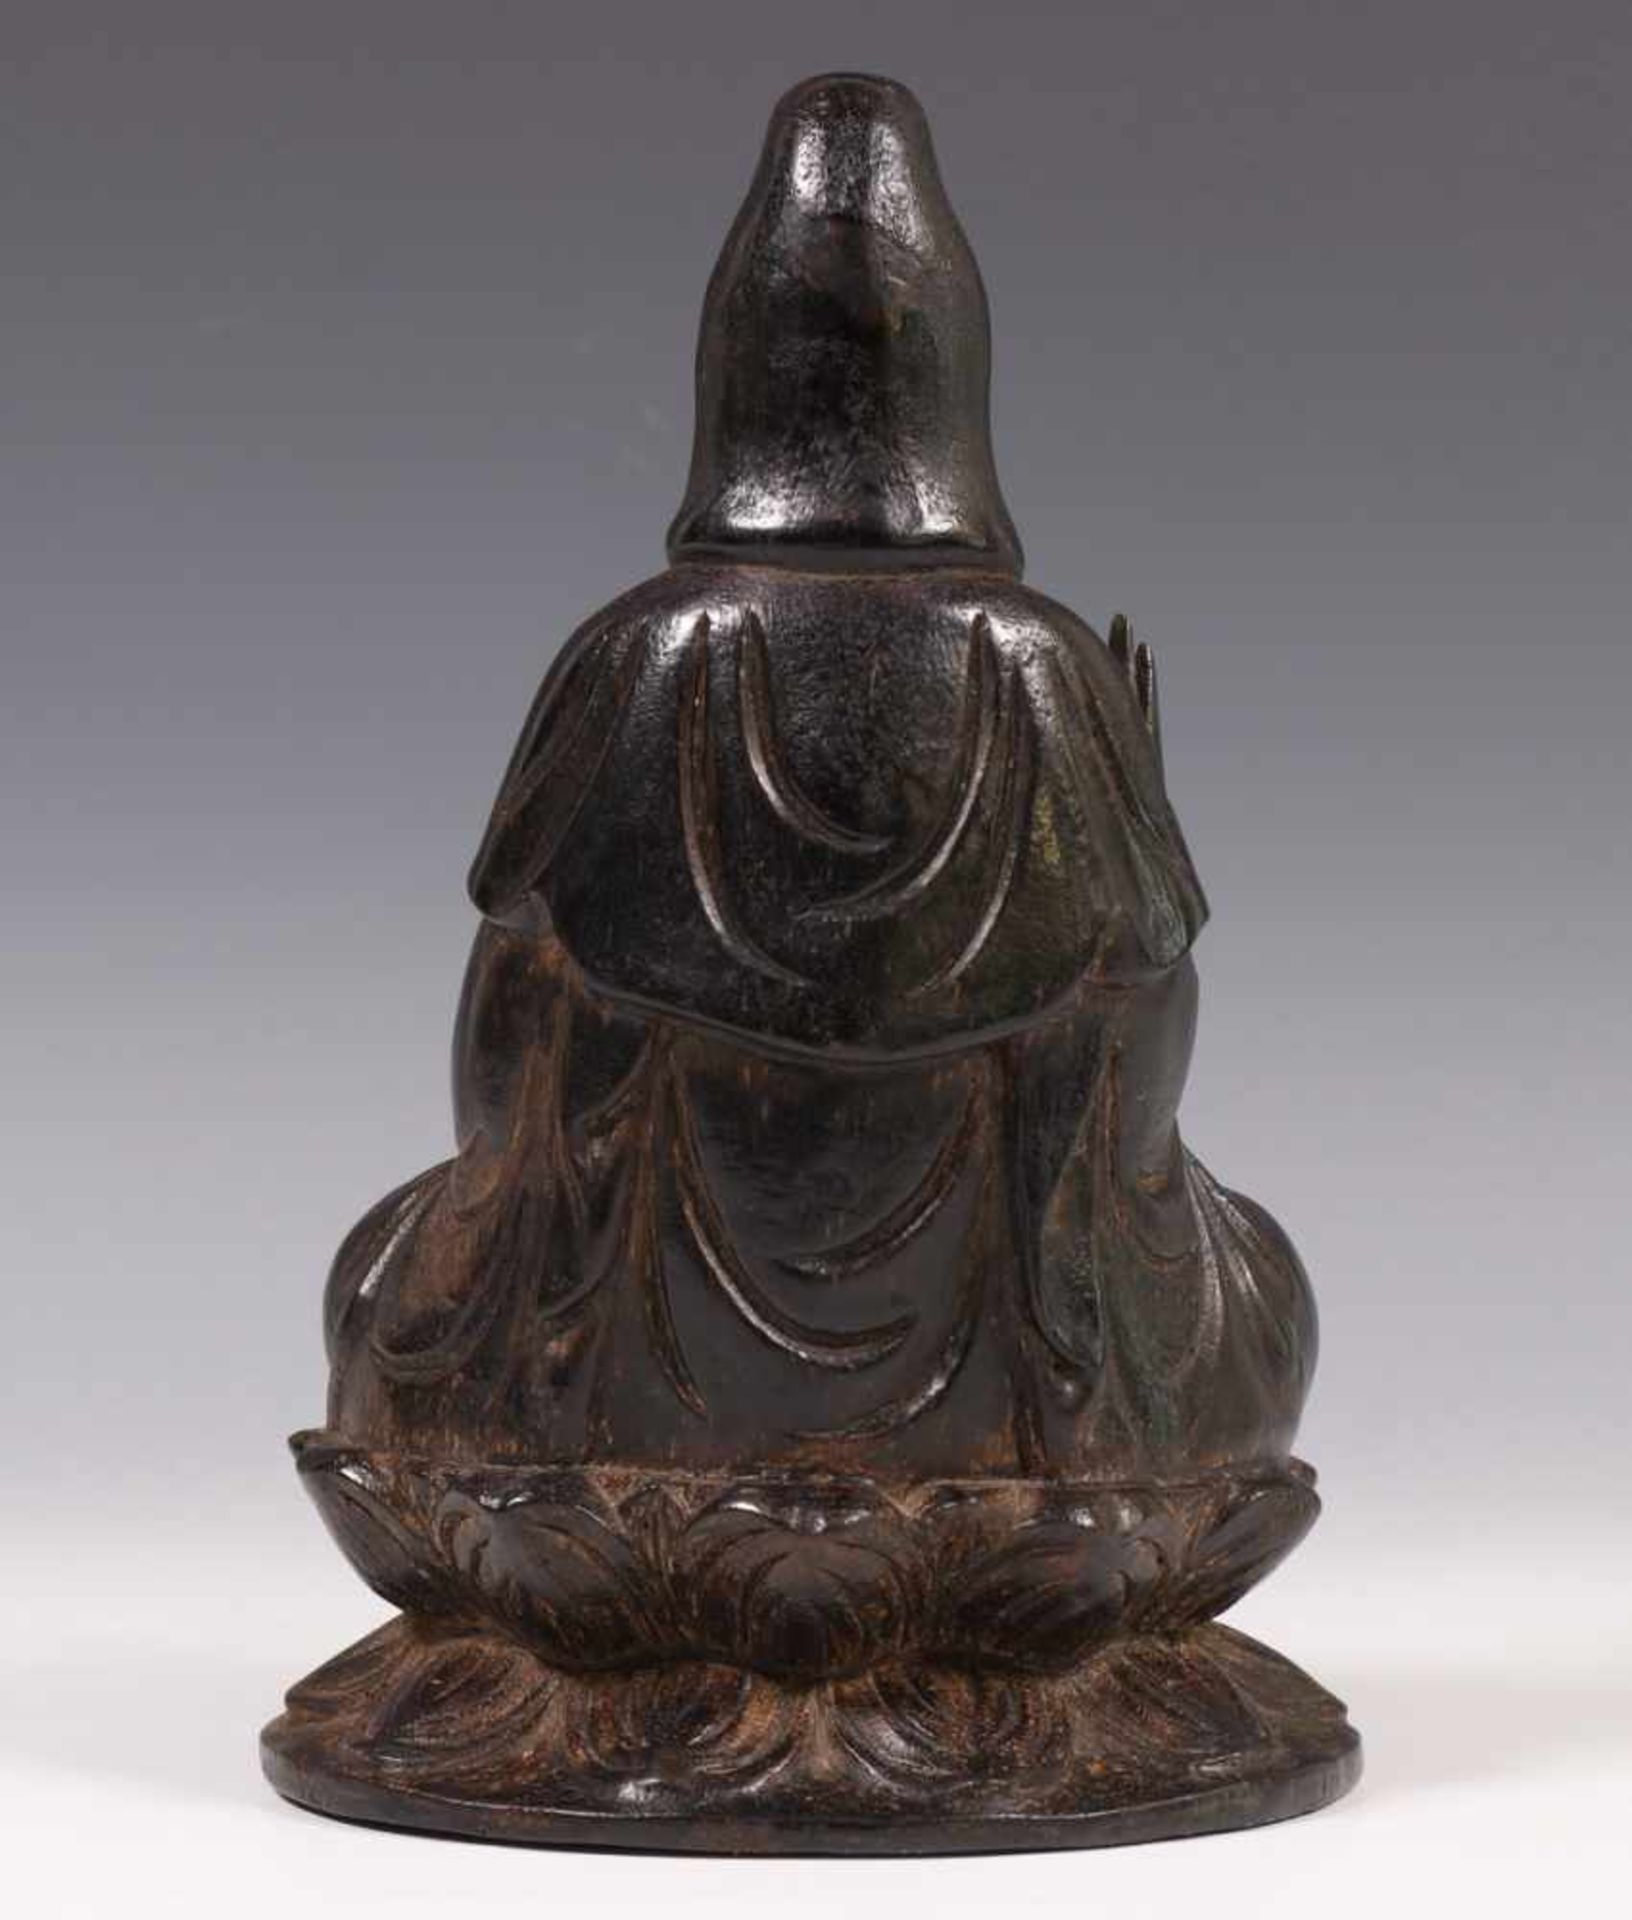 China, zwart houten gestoken Guanyin,in één hand een sprenkelaar, de rechterhand in shunimudra, - Bild 3 aus 4